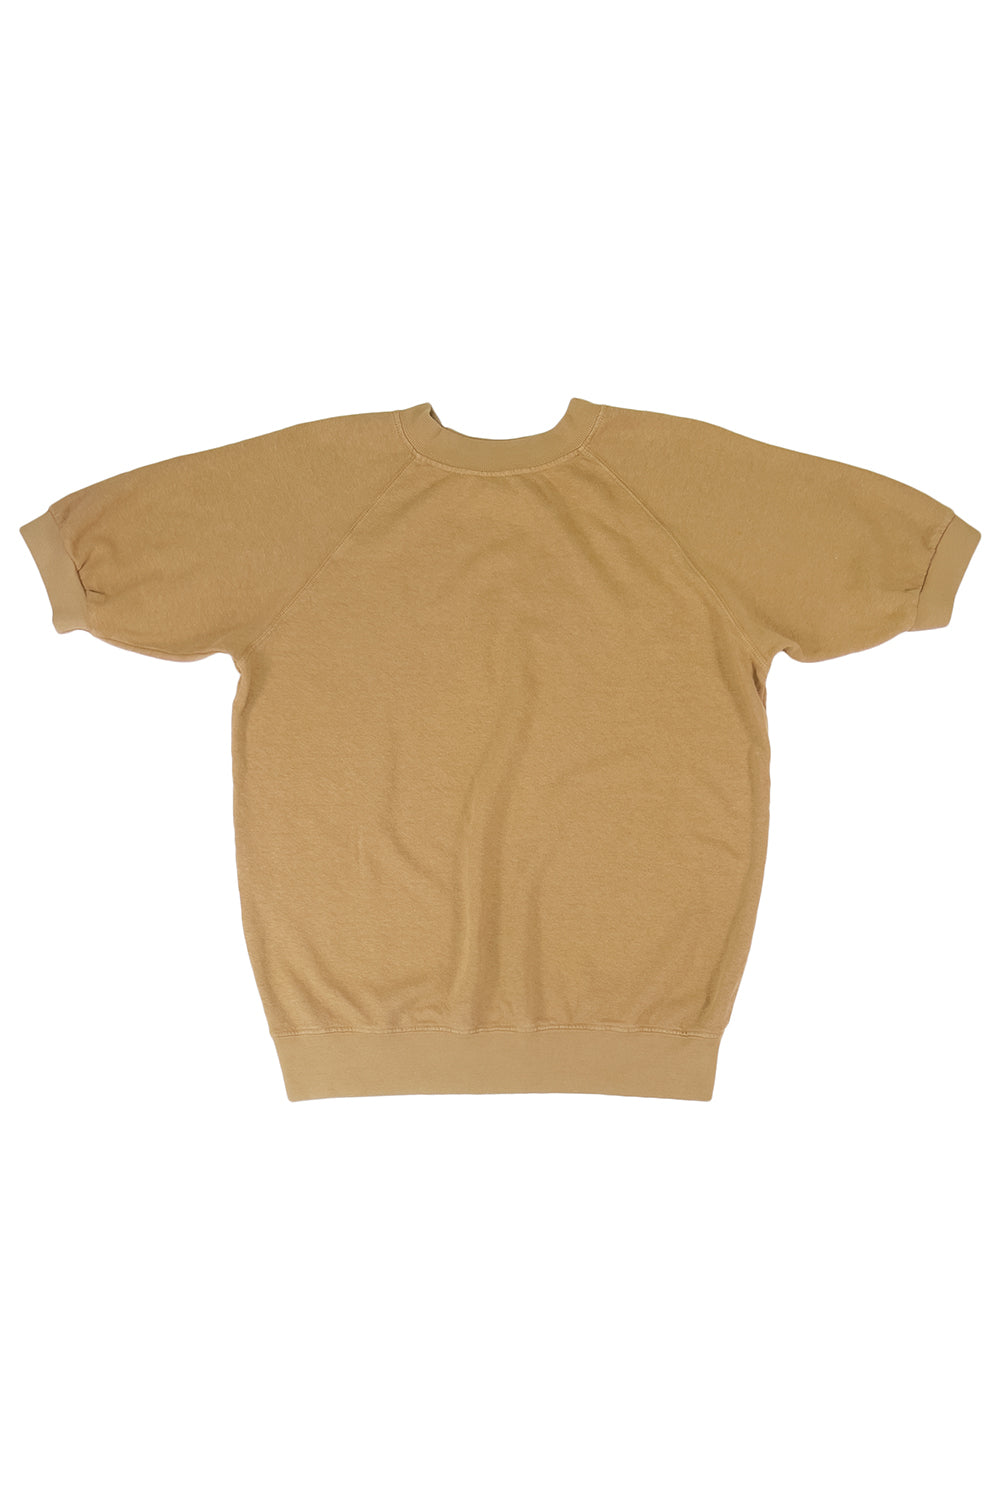 Short Sleeve Raglan Fleece Sweatshirt | Jungmaven Hemp Clothing & Accessories / Color: Coyote